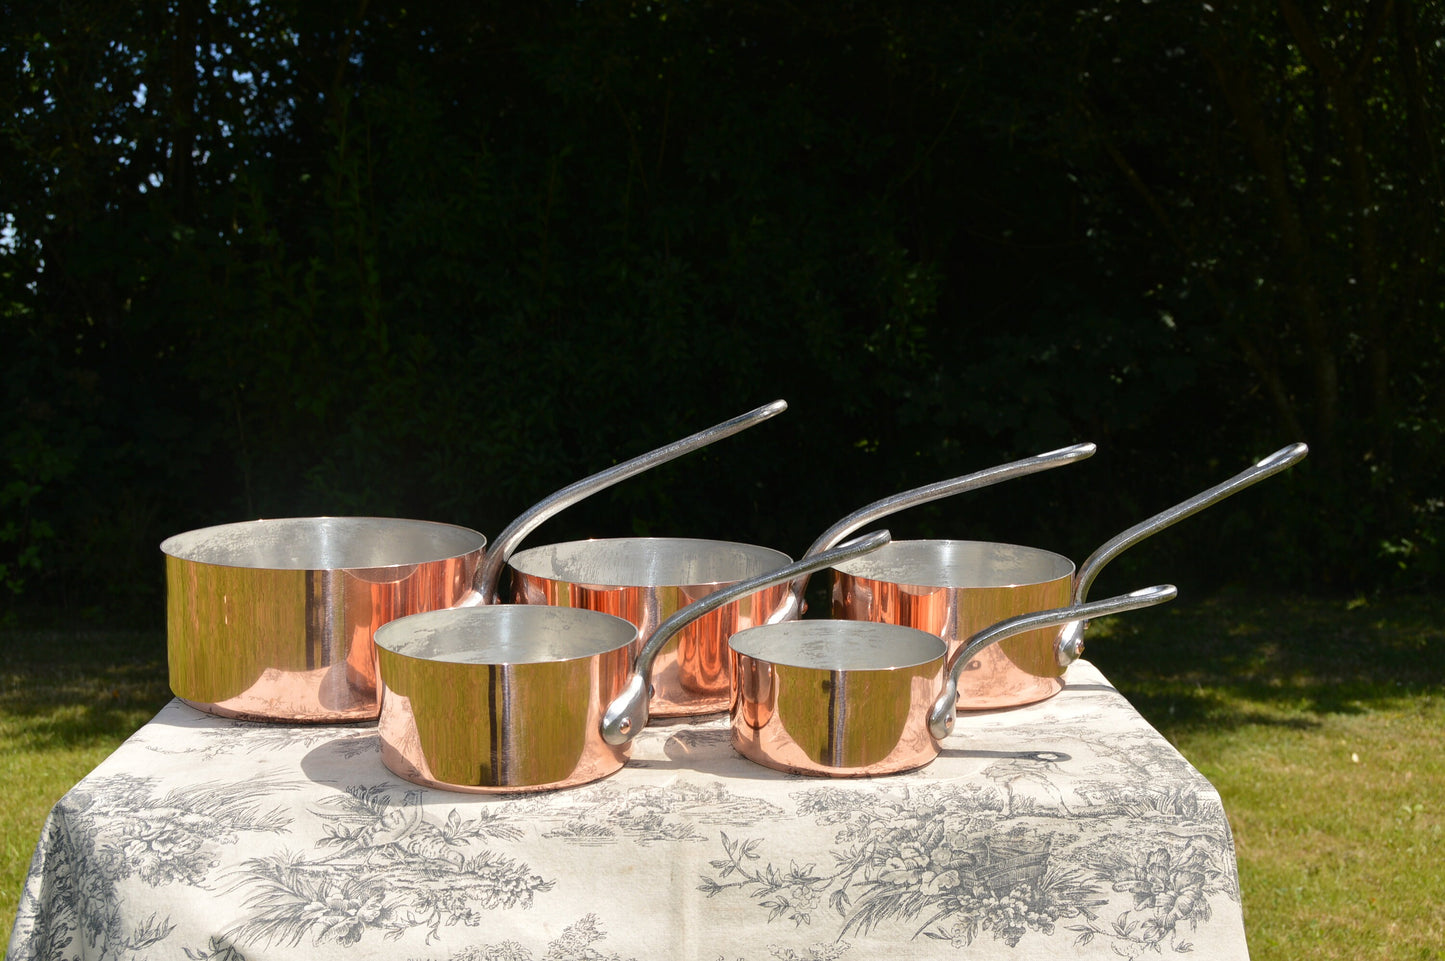 GAOR Cinq 1,3-1,7 mm Ensemble de cuivre français vintage Cinq casseroles en cuivre graduées doublées d'étain Fabuleuses bases martelées 12 cm-20 cm polies professionnellement